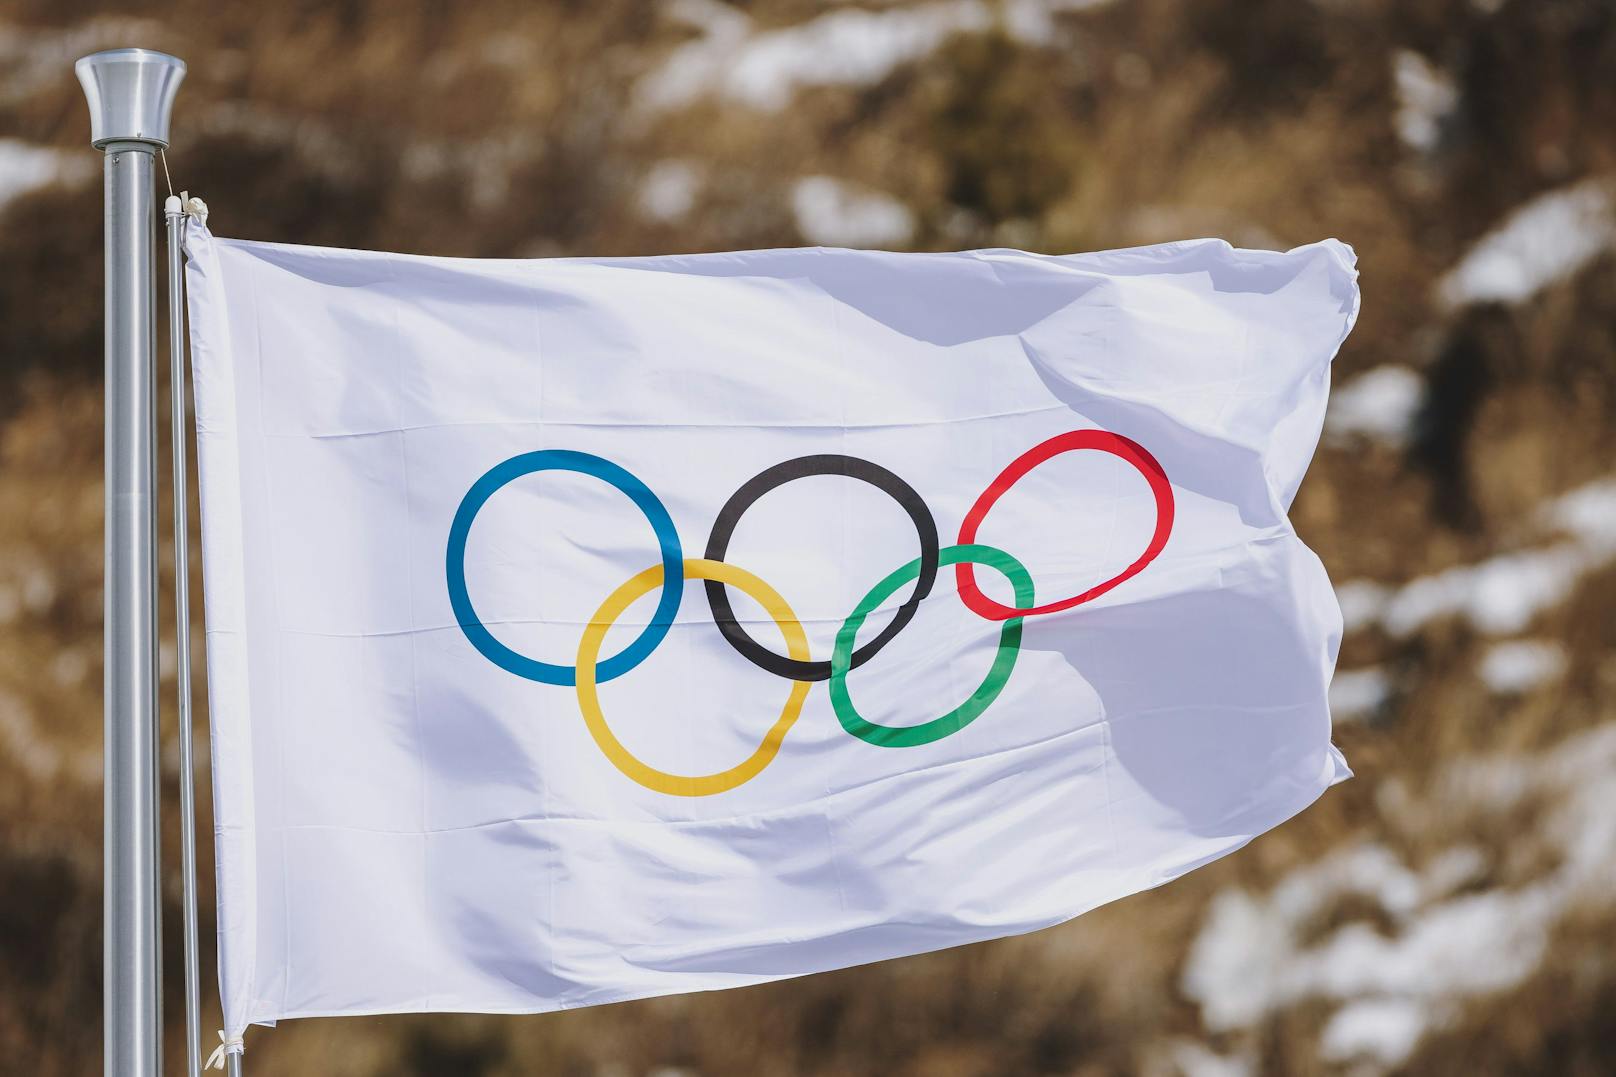 Das IoC greift im Olympia-Programm für die Spiele 2026 durch. 